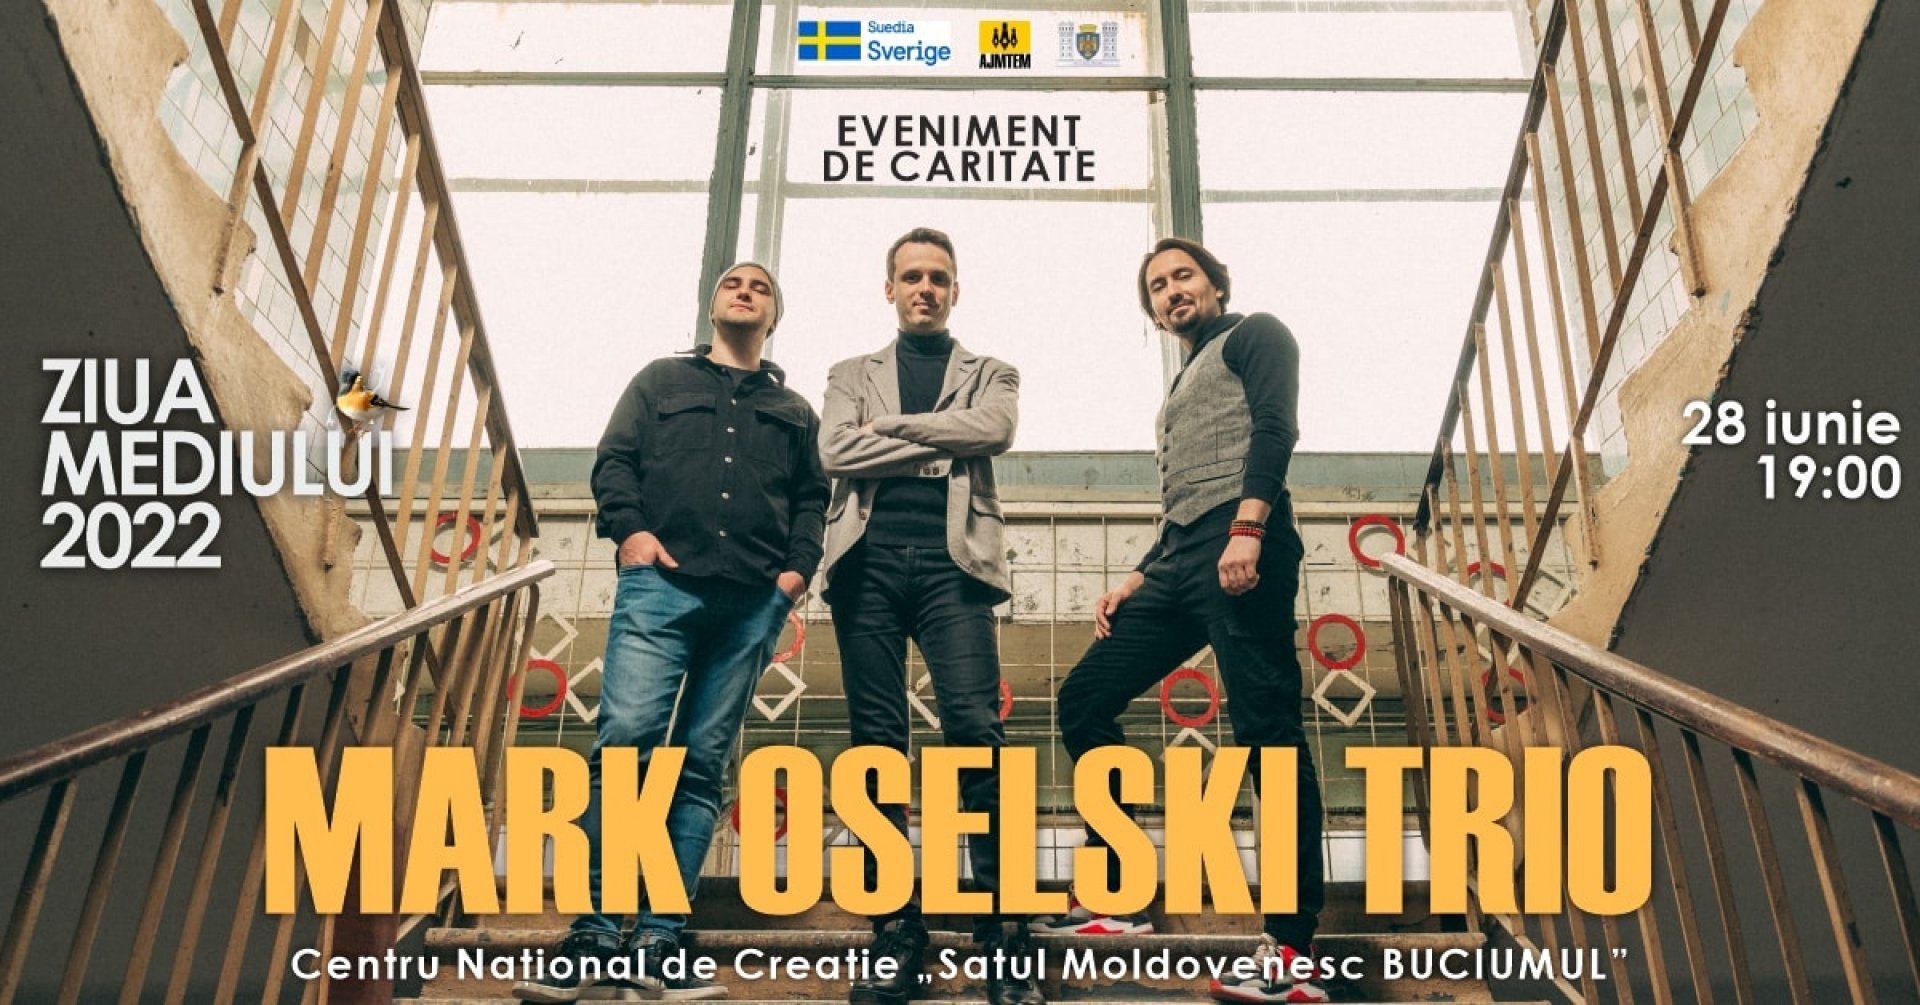 Mark Oselski Trio